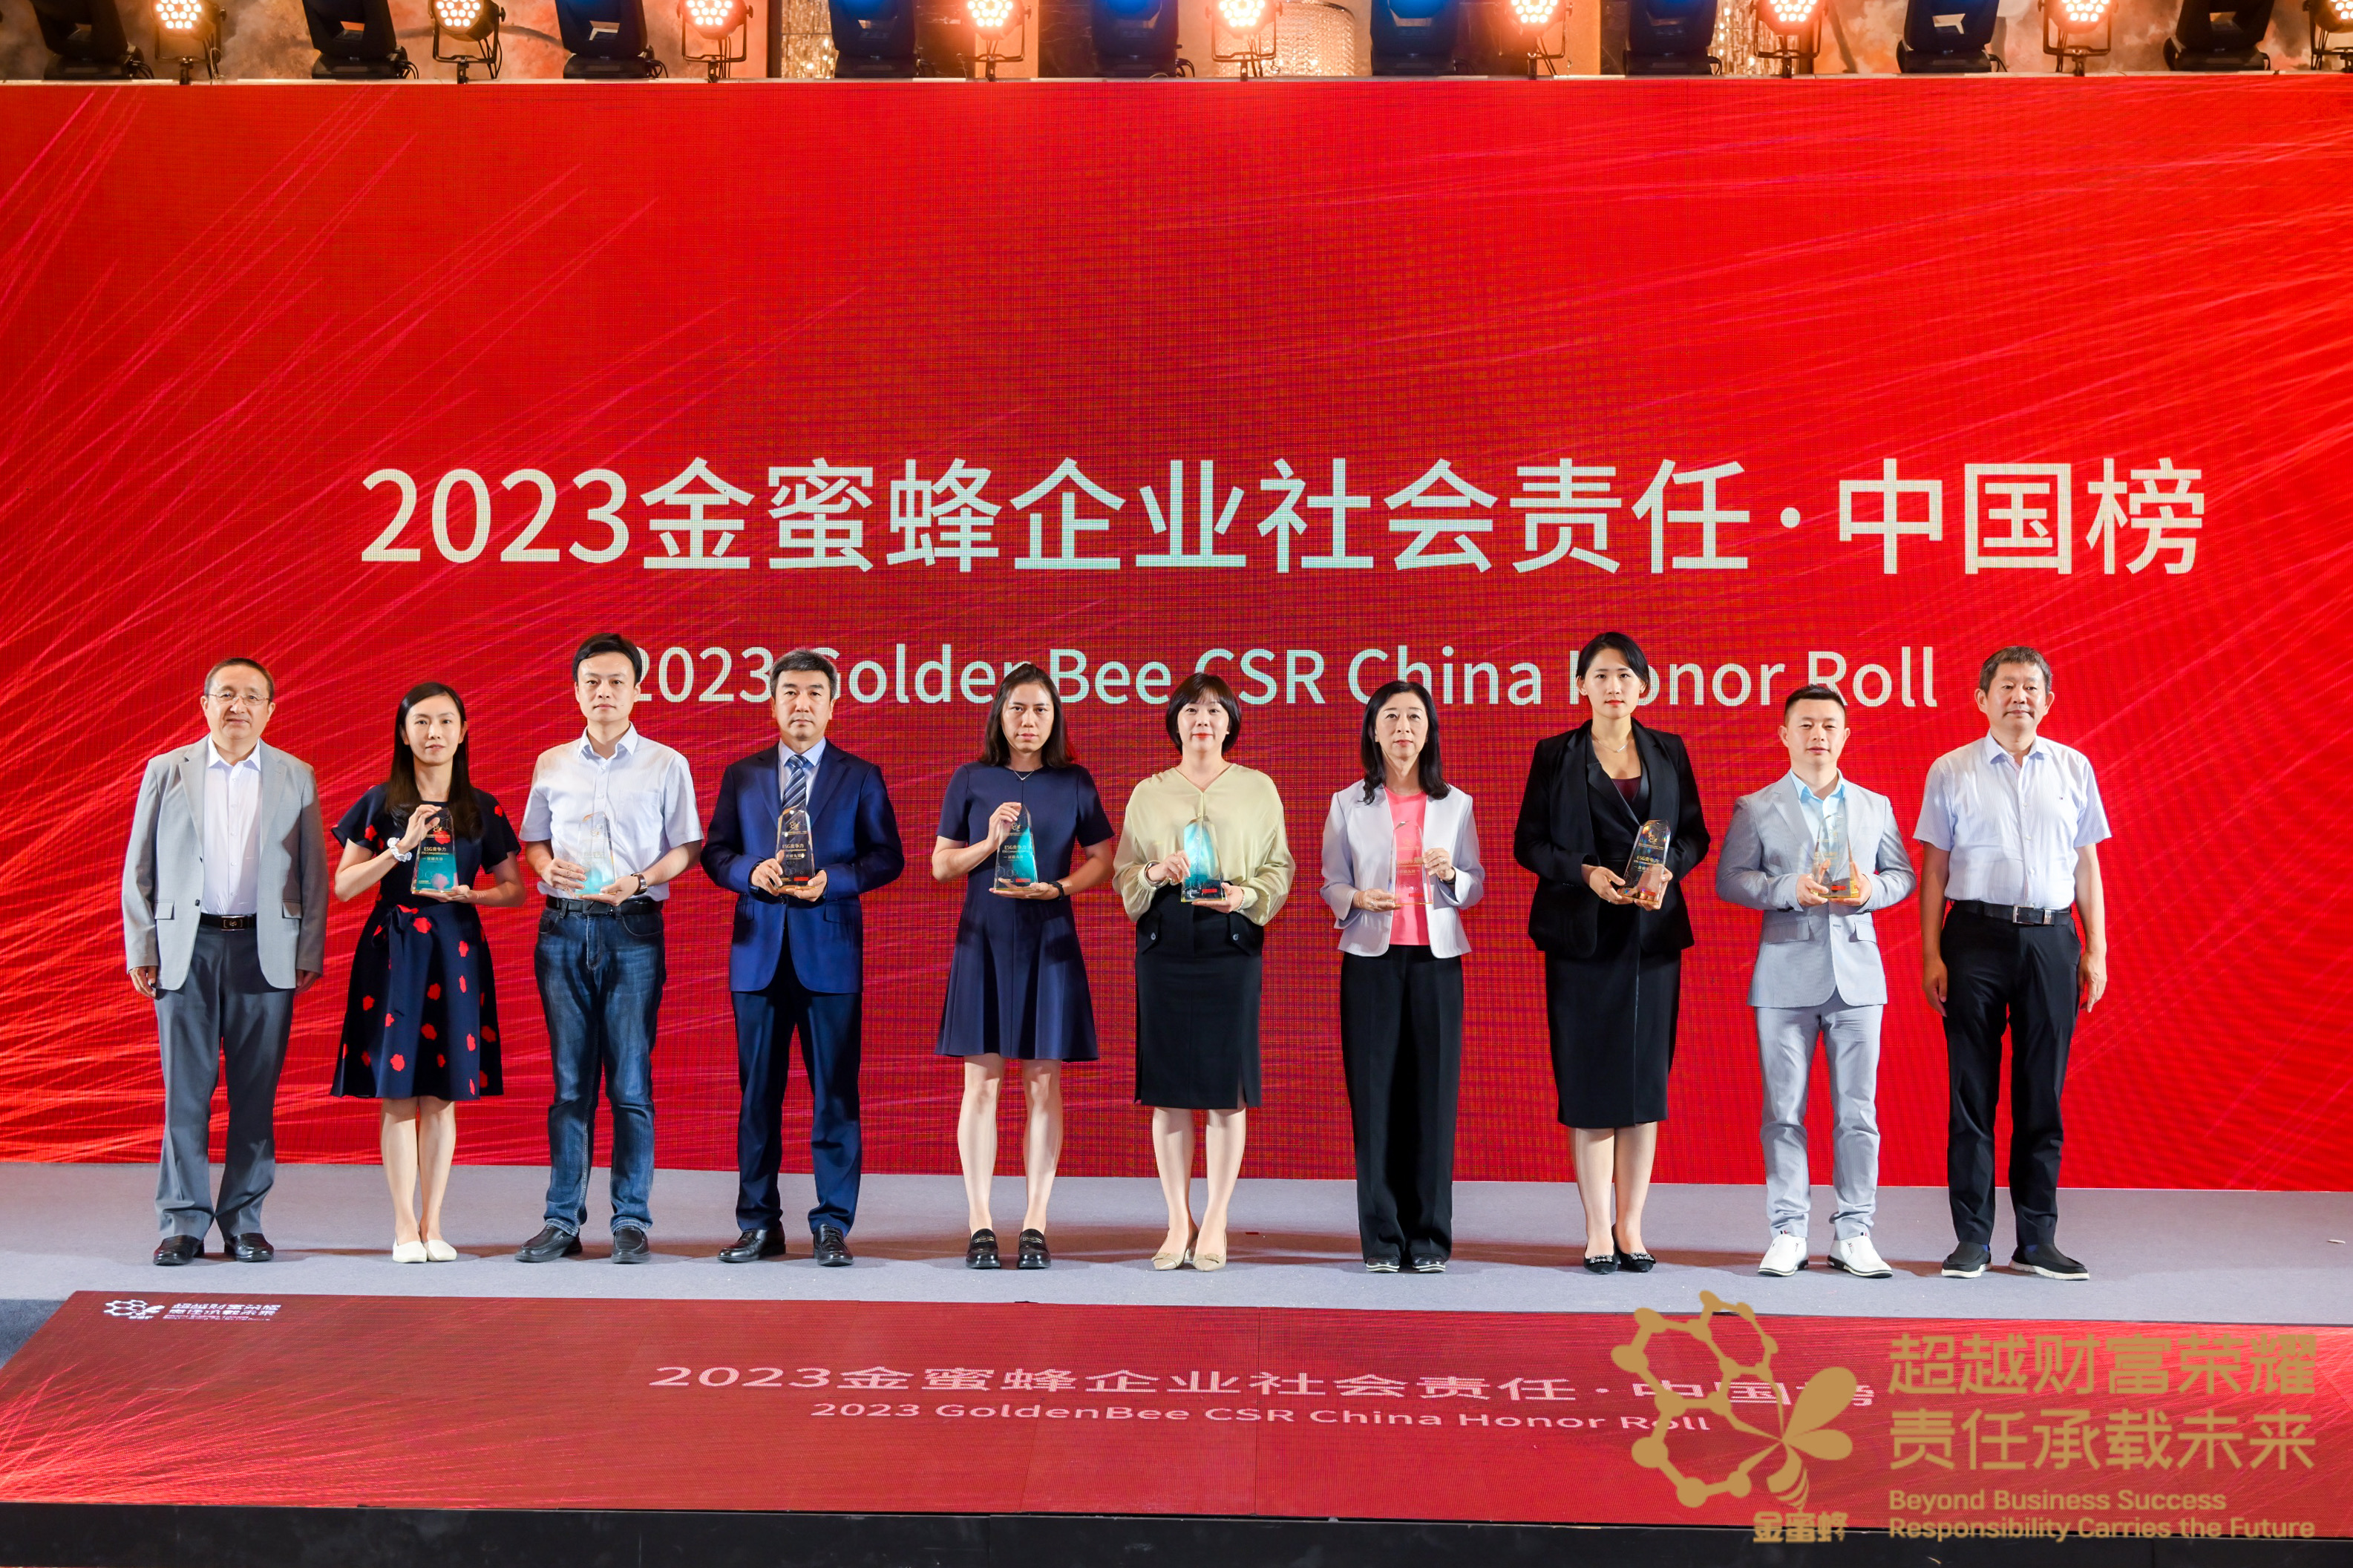 尊龙凯时尊龙凯时公司上榜“2023金蜜蜂企业社会责任·中国榜” 并荣获“ESG竞争力·双碳先锋”称号